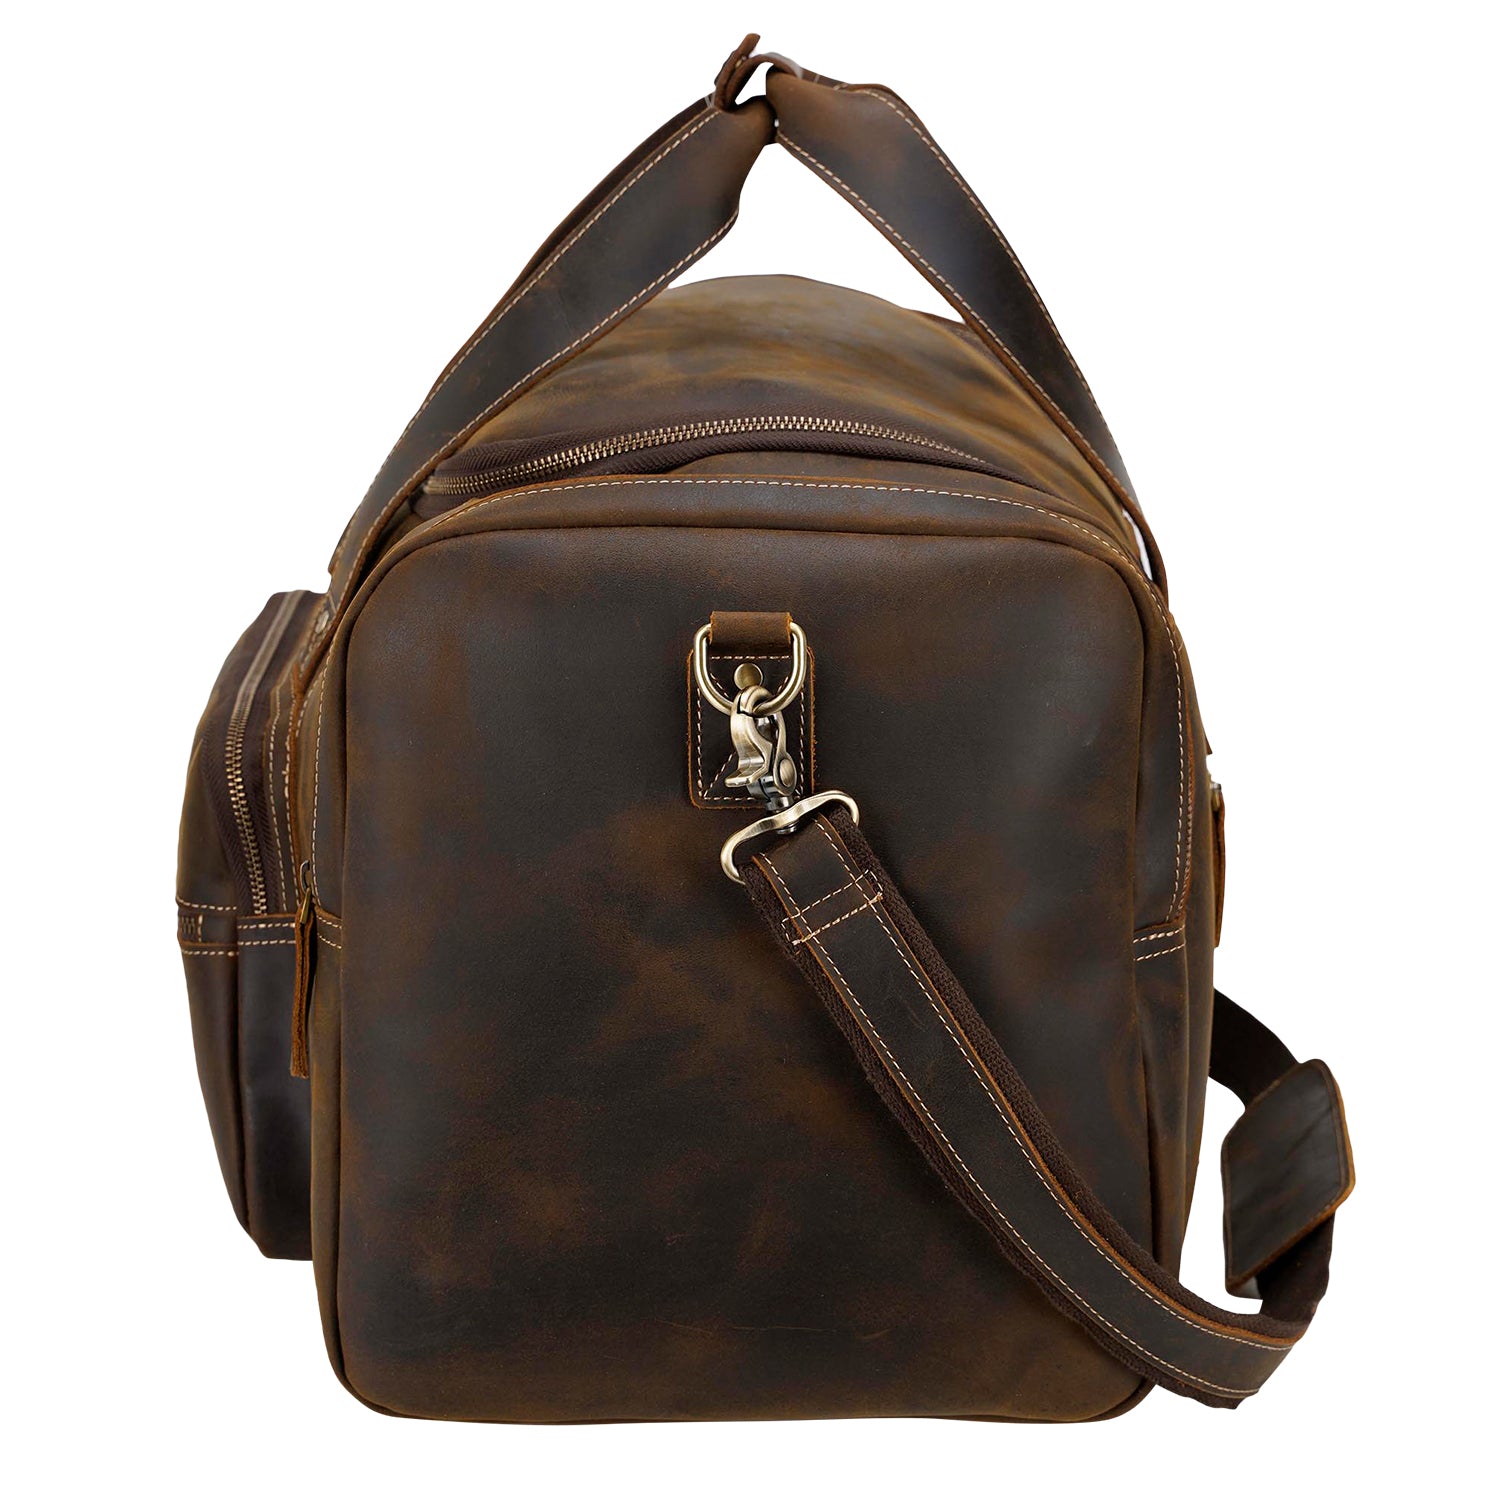 Large Leather Travel Duffle Bag 82003 – Unity Refresh